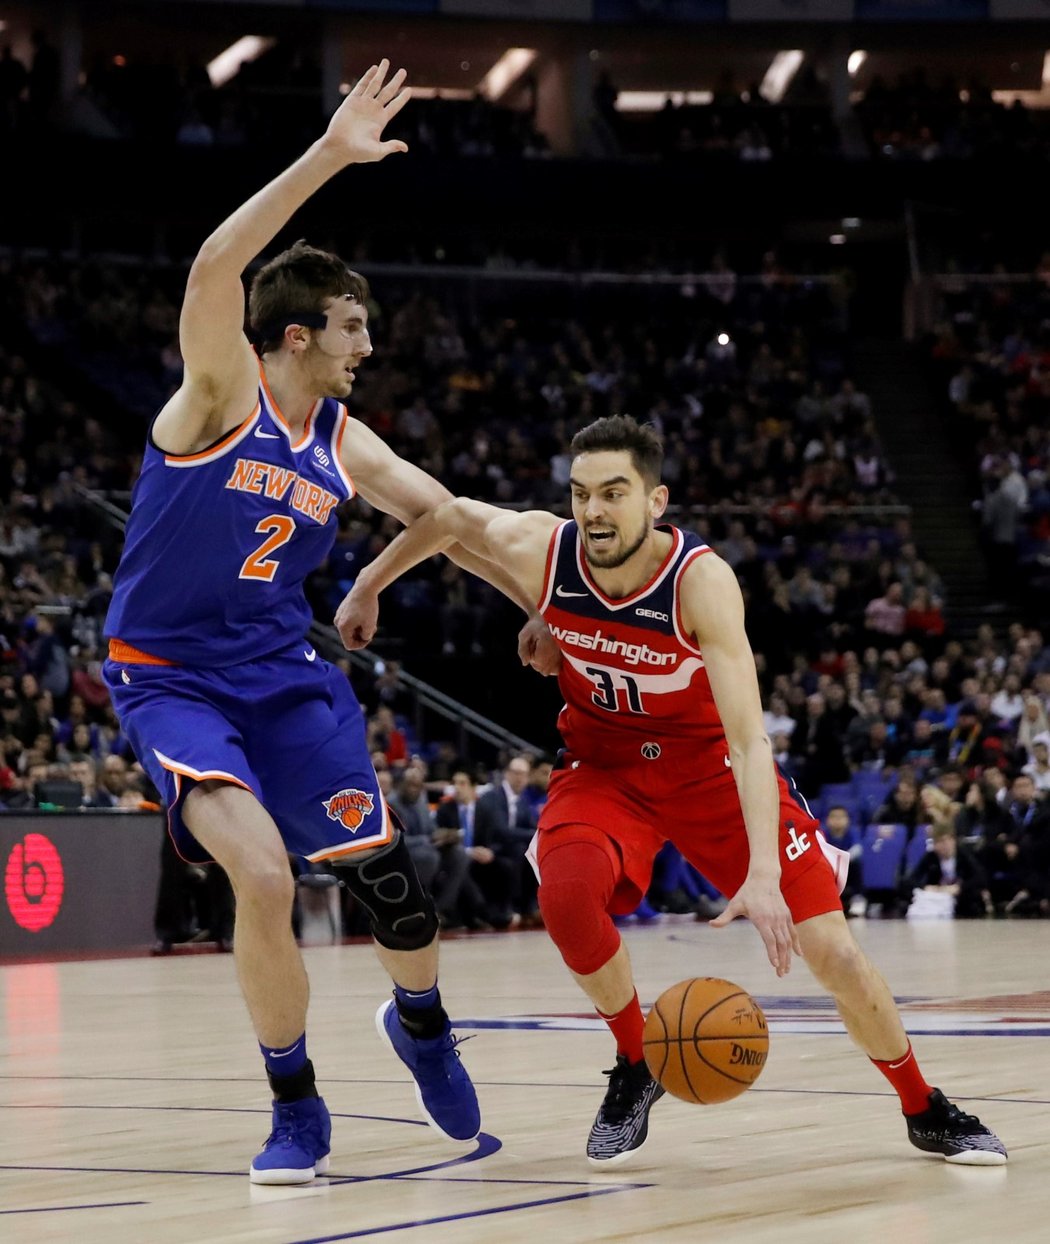 Český rozehrávač Tomáš Satoranský byl v prvním poločase proti New York Knicks hodně aktivní, nasázel 12 bodů